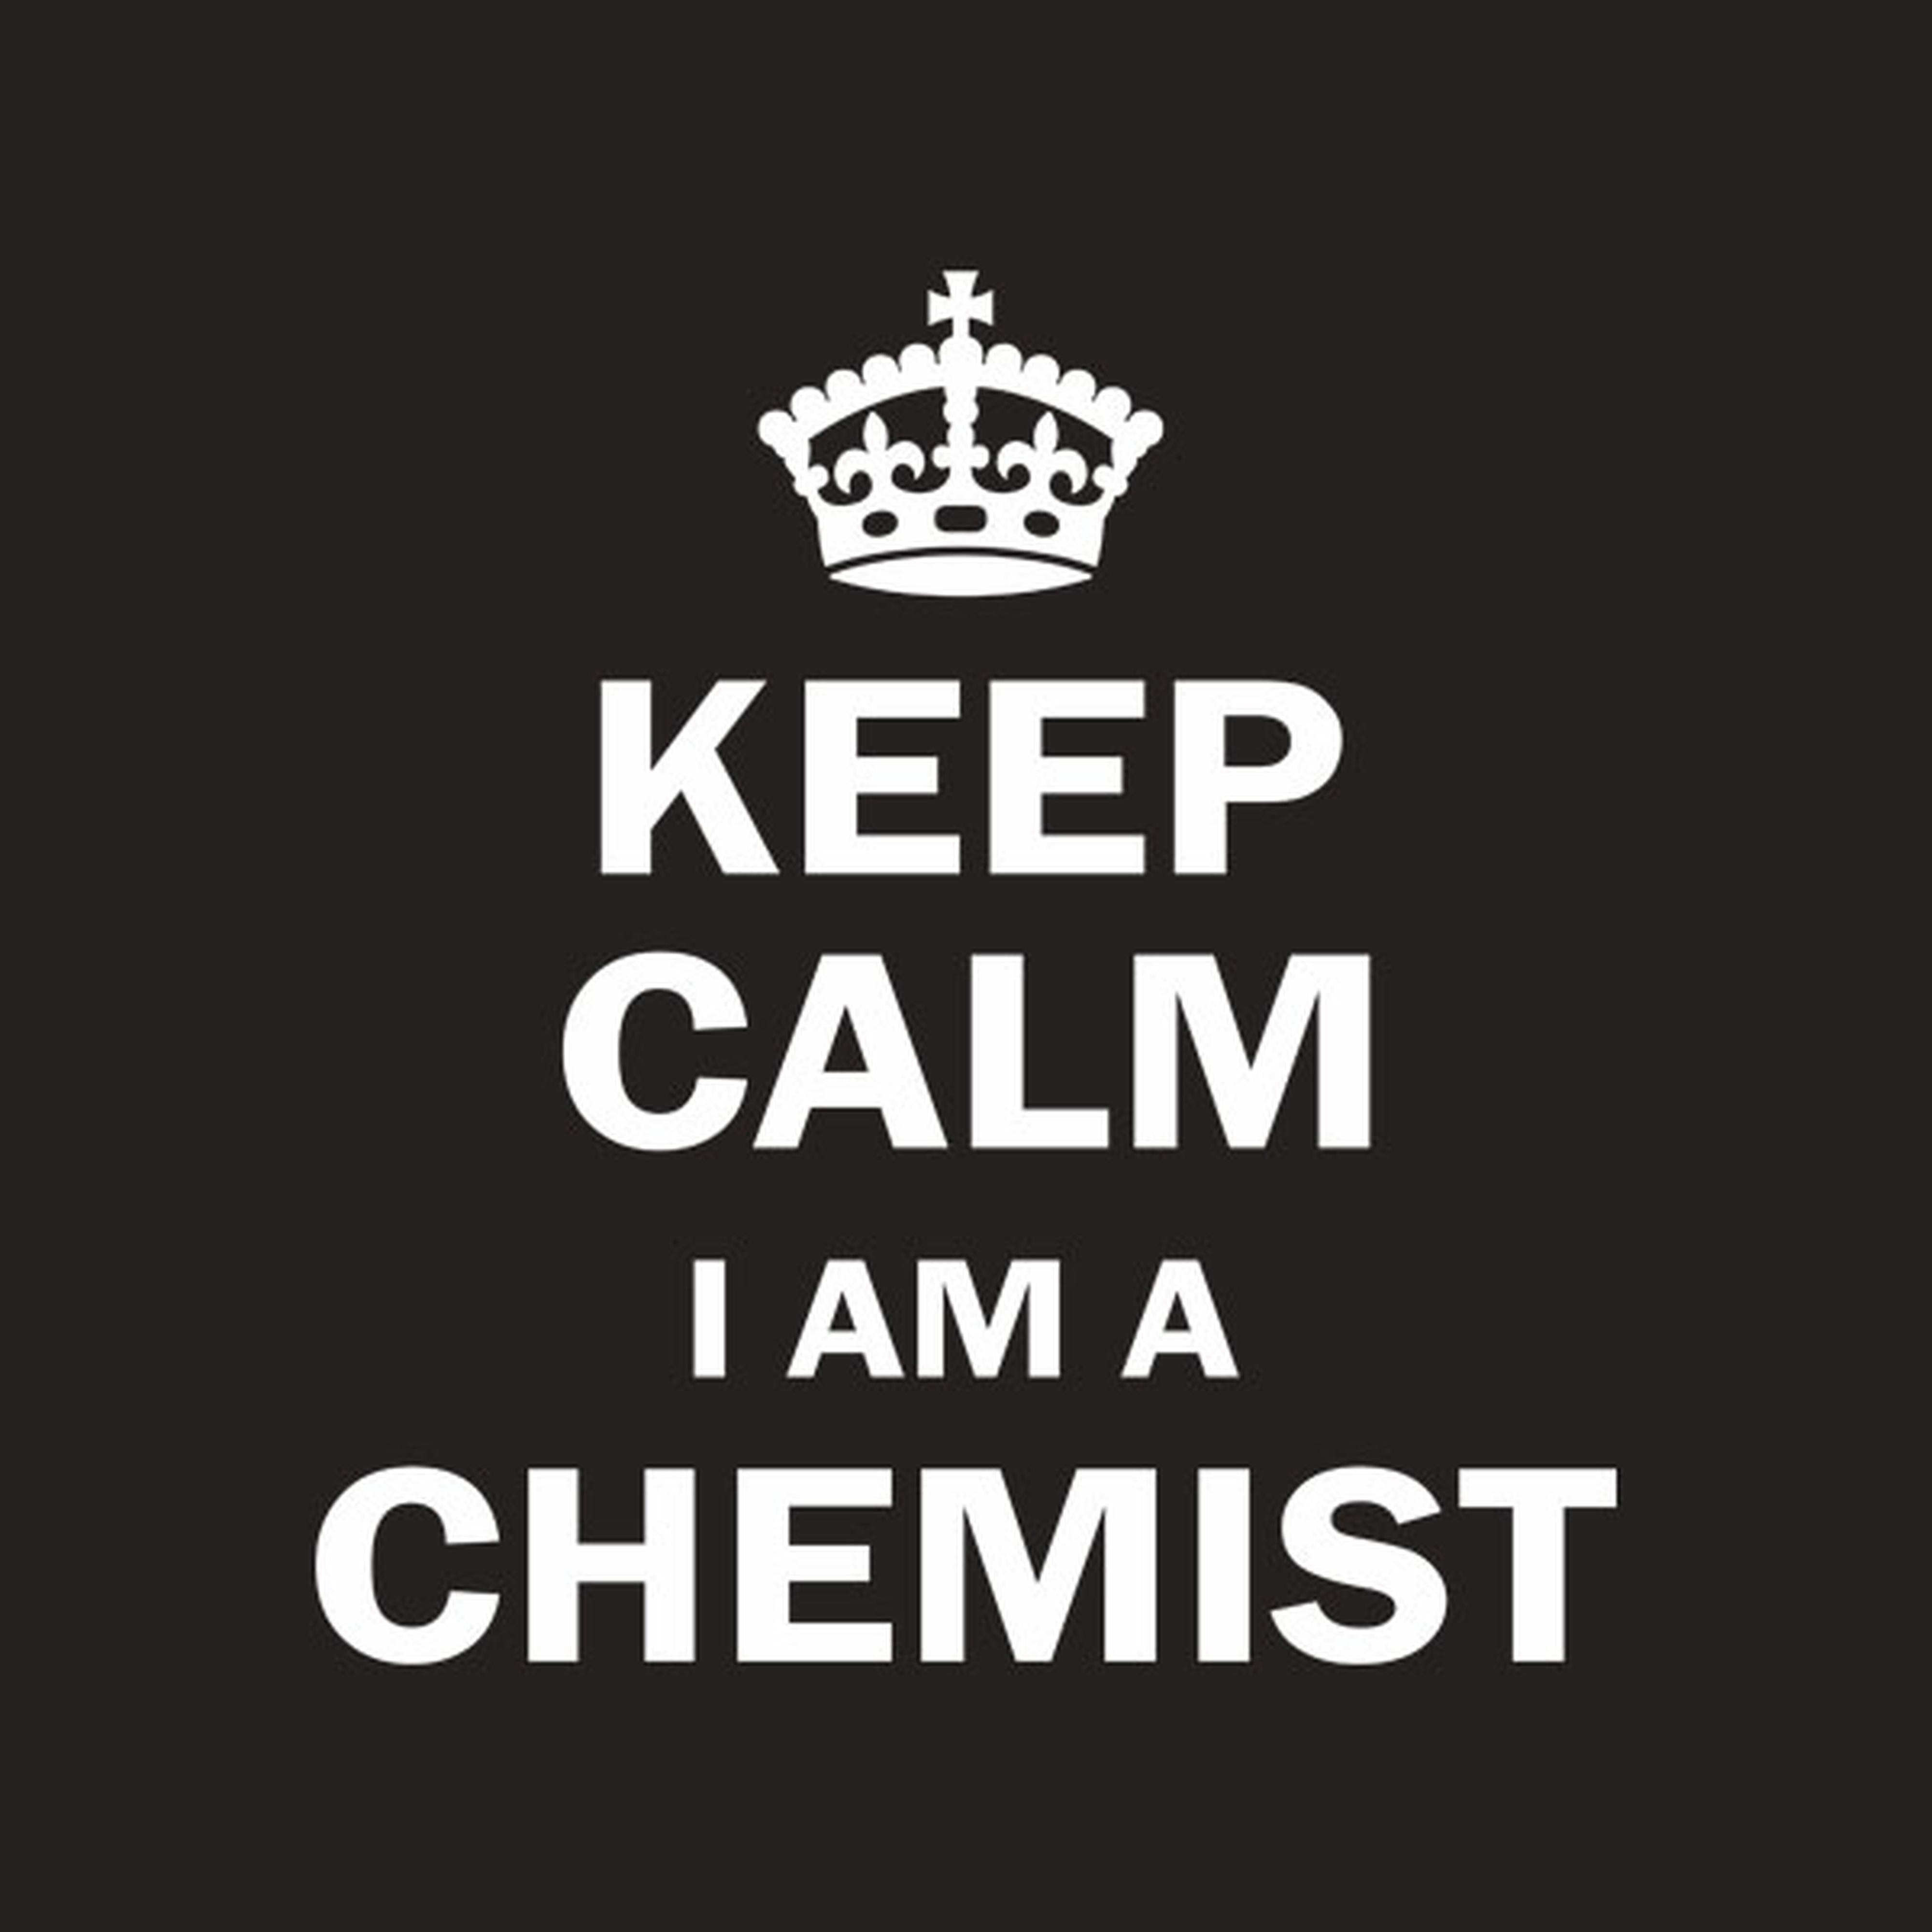 Keep calm I am a chemist - T-shirt